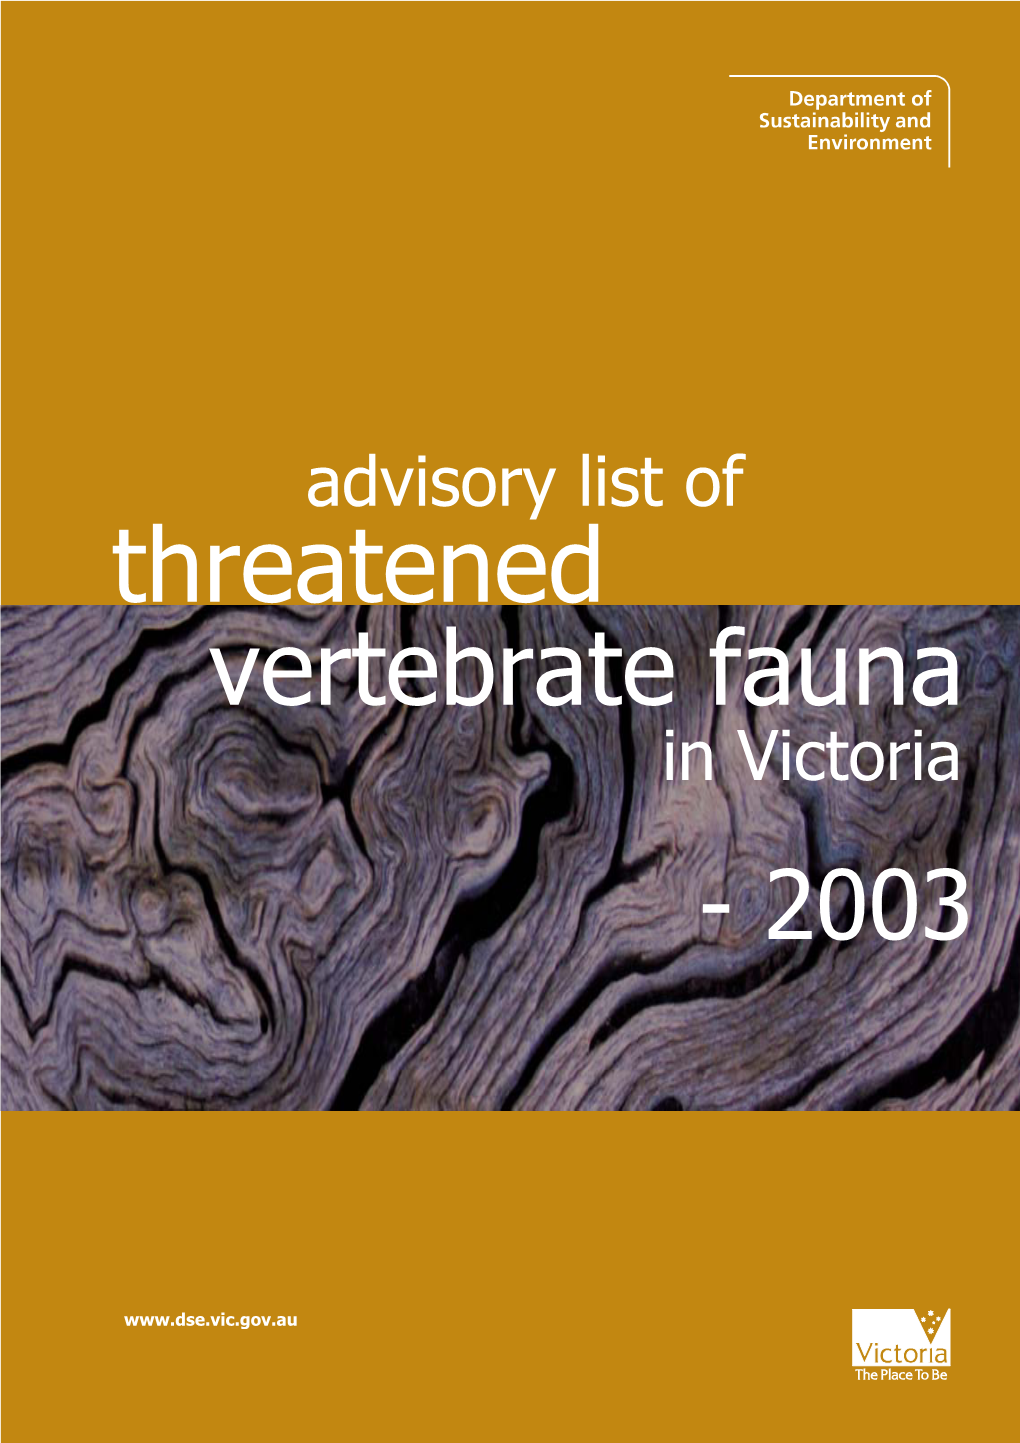 Threatened Vertebrate Fauna in Victoria - 2003